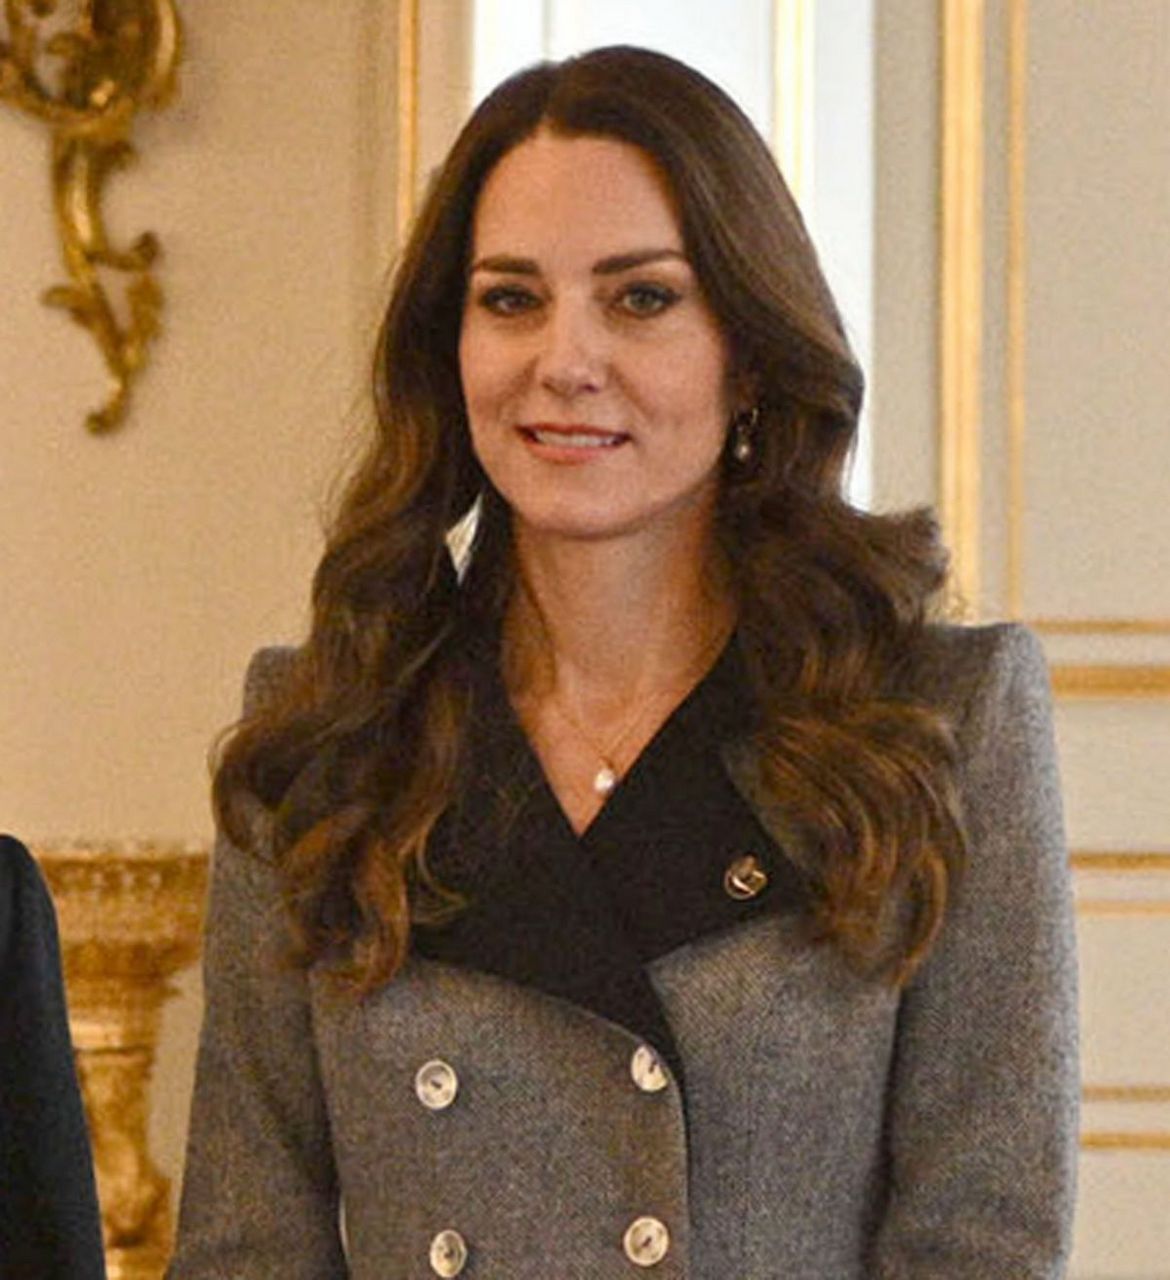 Kate Middleton And Princess Mary Of Denmark Danner Crisis Centre Copenhagen